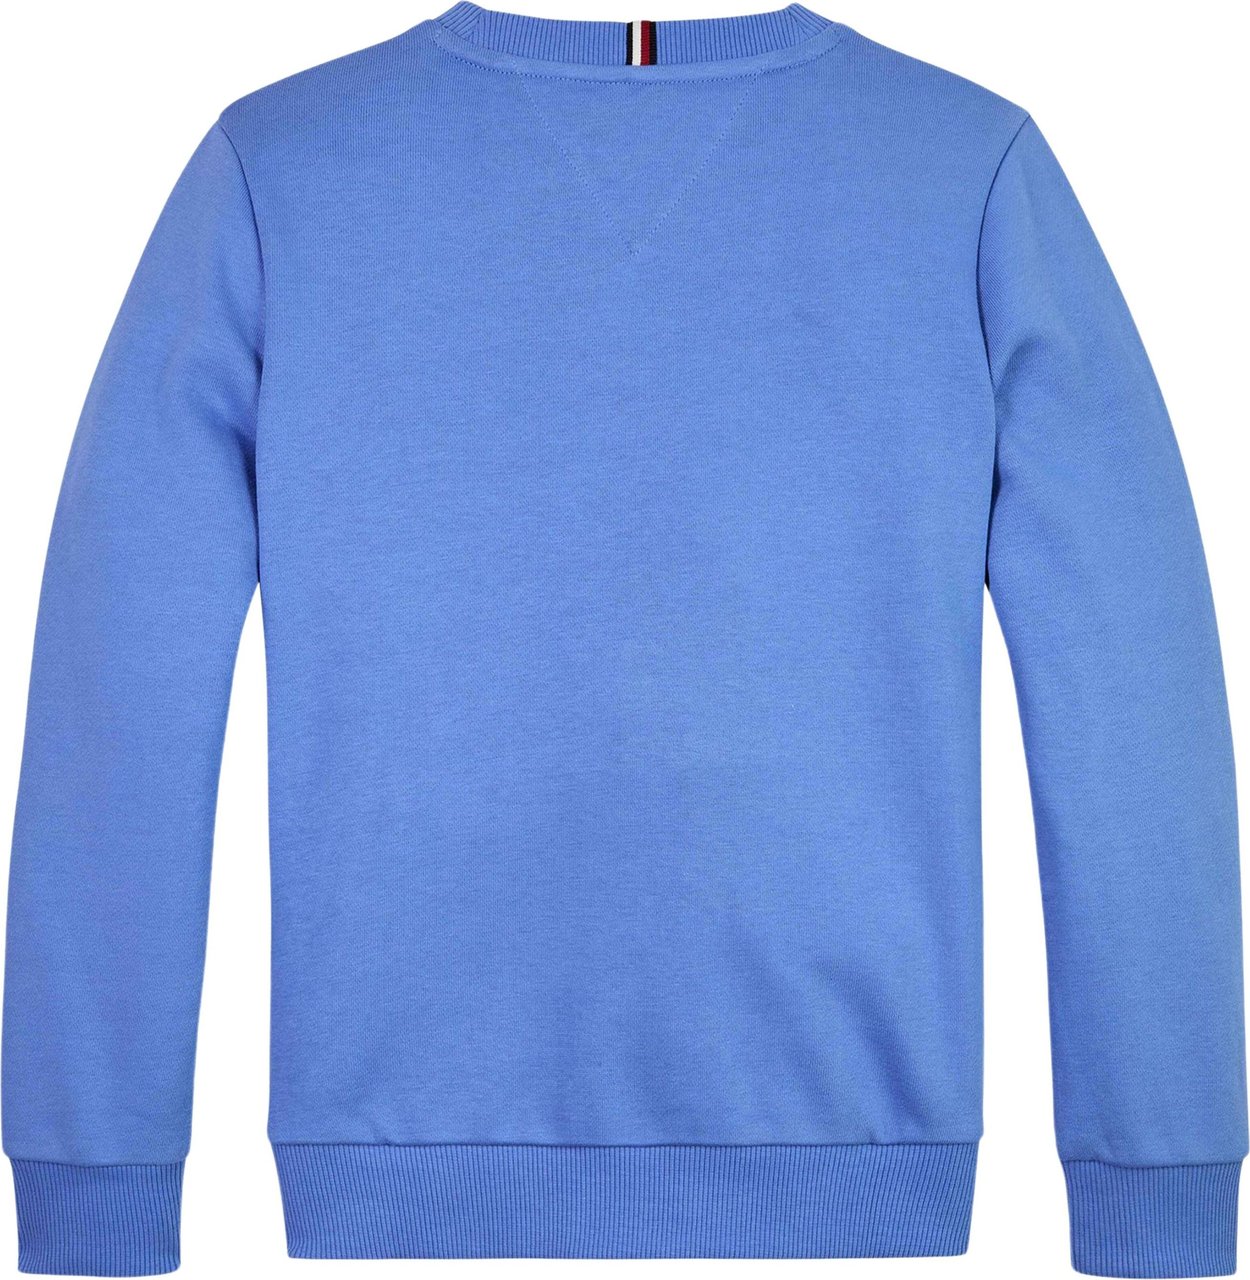 Tommy Hilfiger 1985 Sweater Blauw